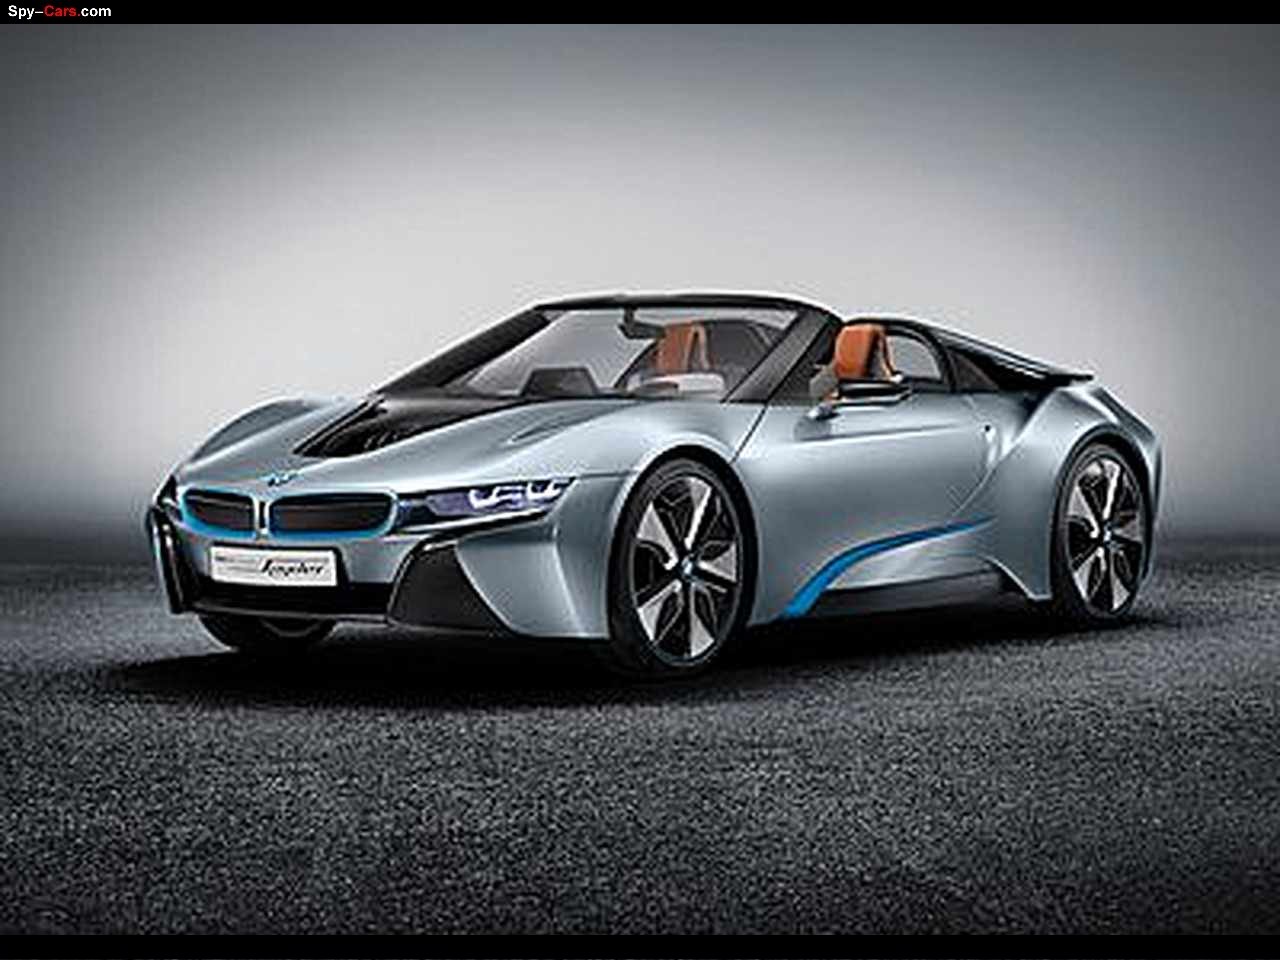 2013 BMW I8 Spyder Concept